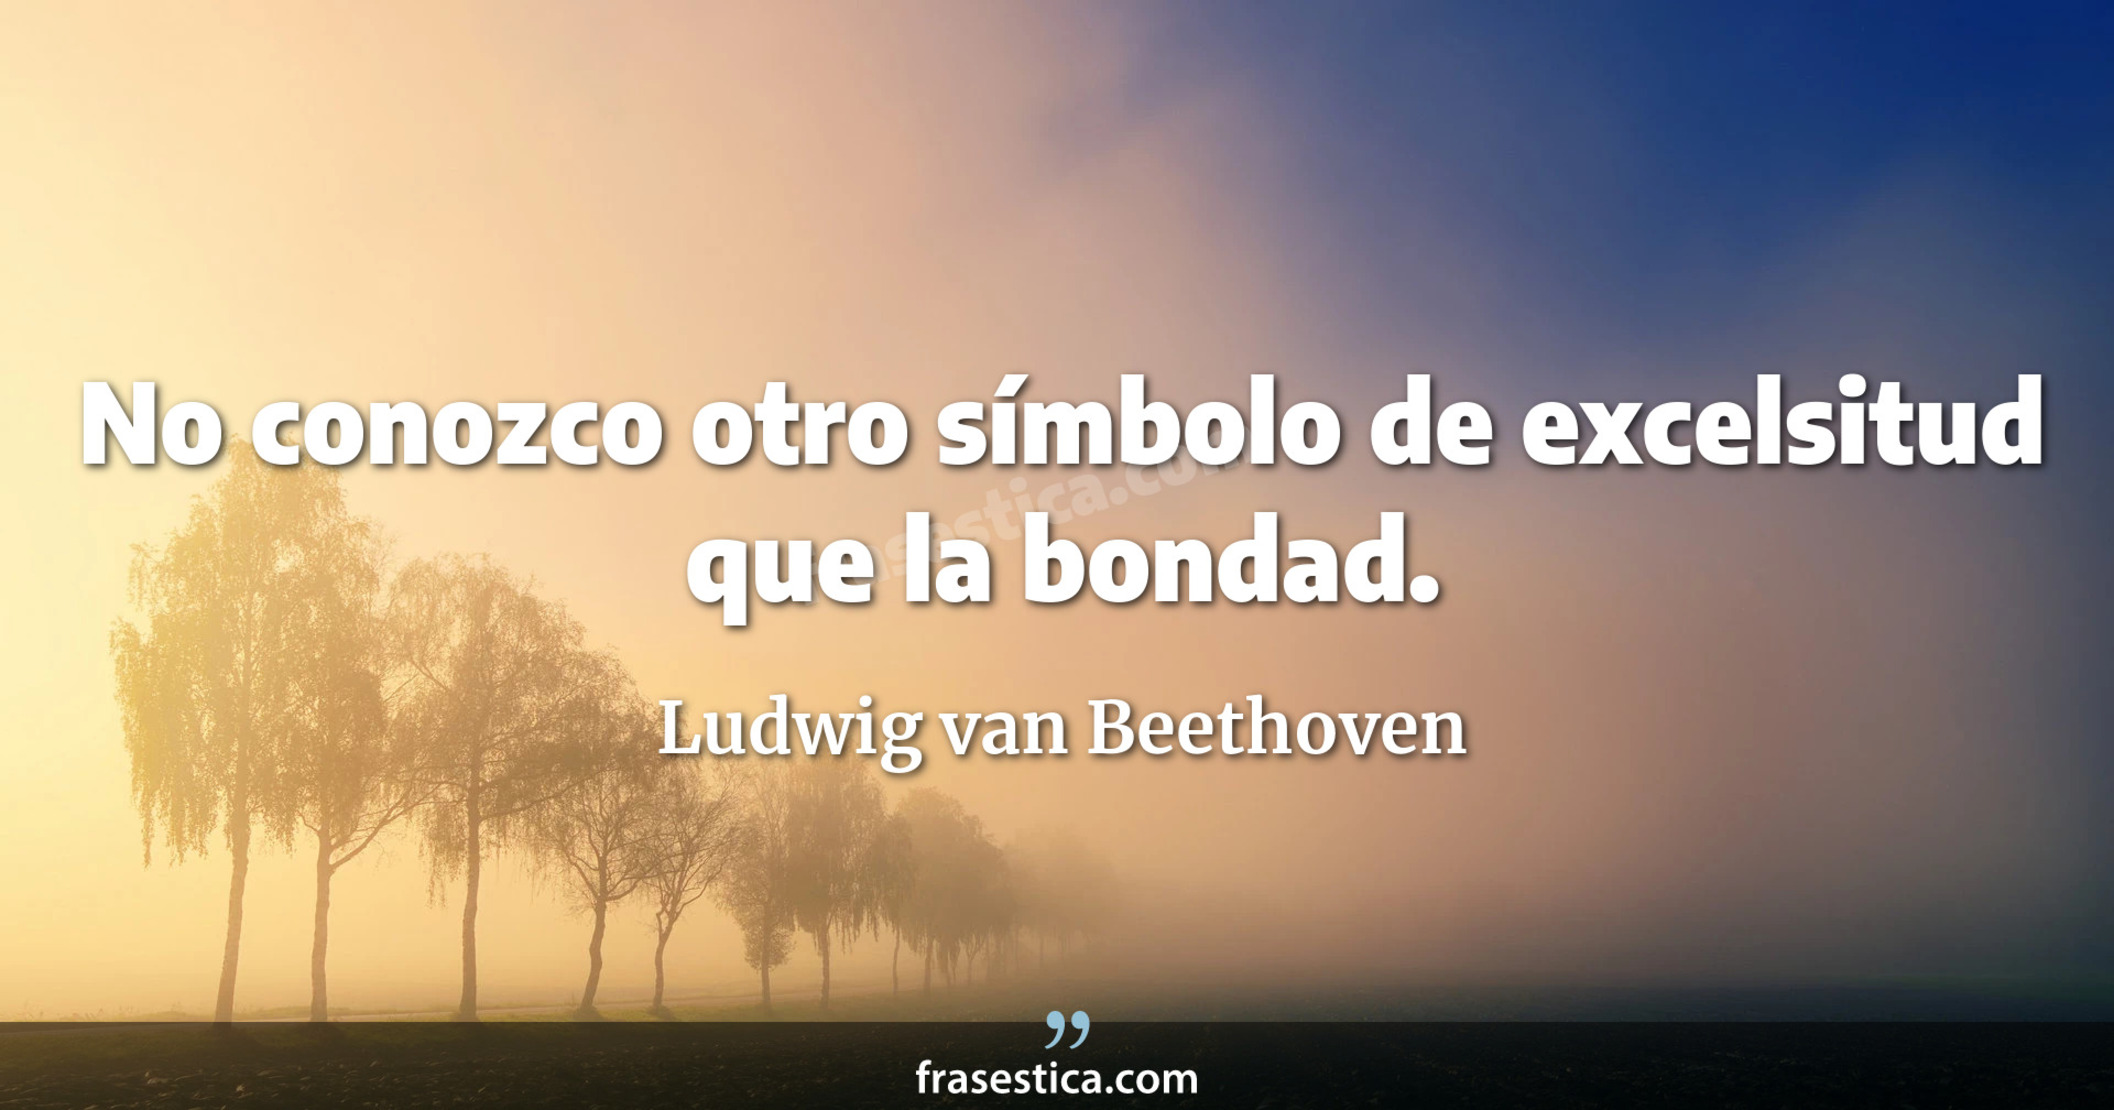 No conozco otro símbolo de excelsitud que la bondad. - Ludwig van Beethoven